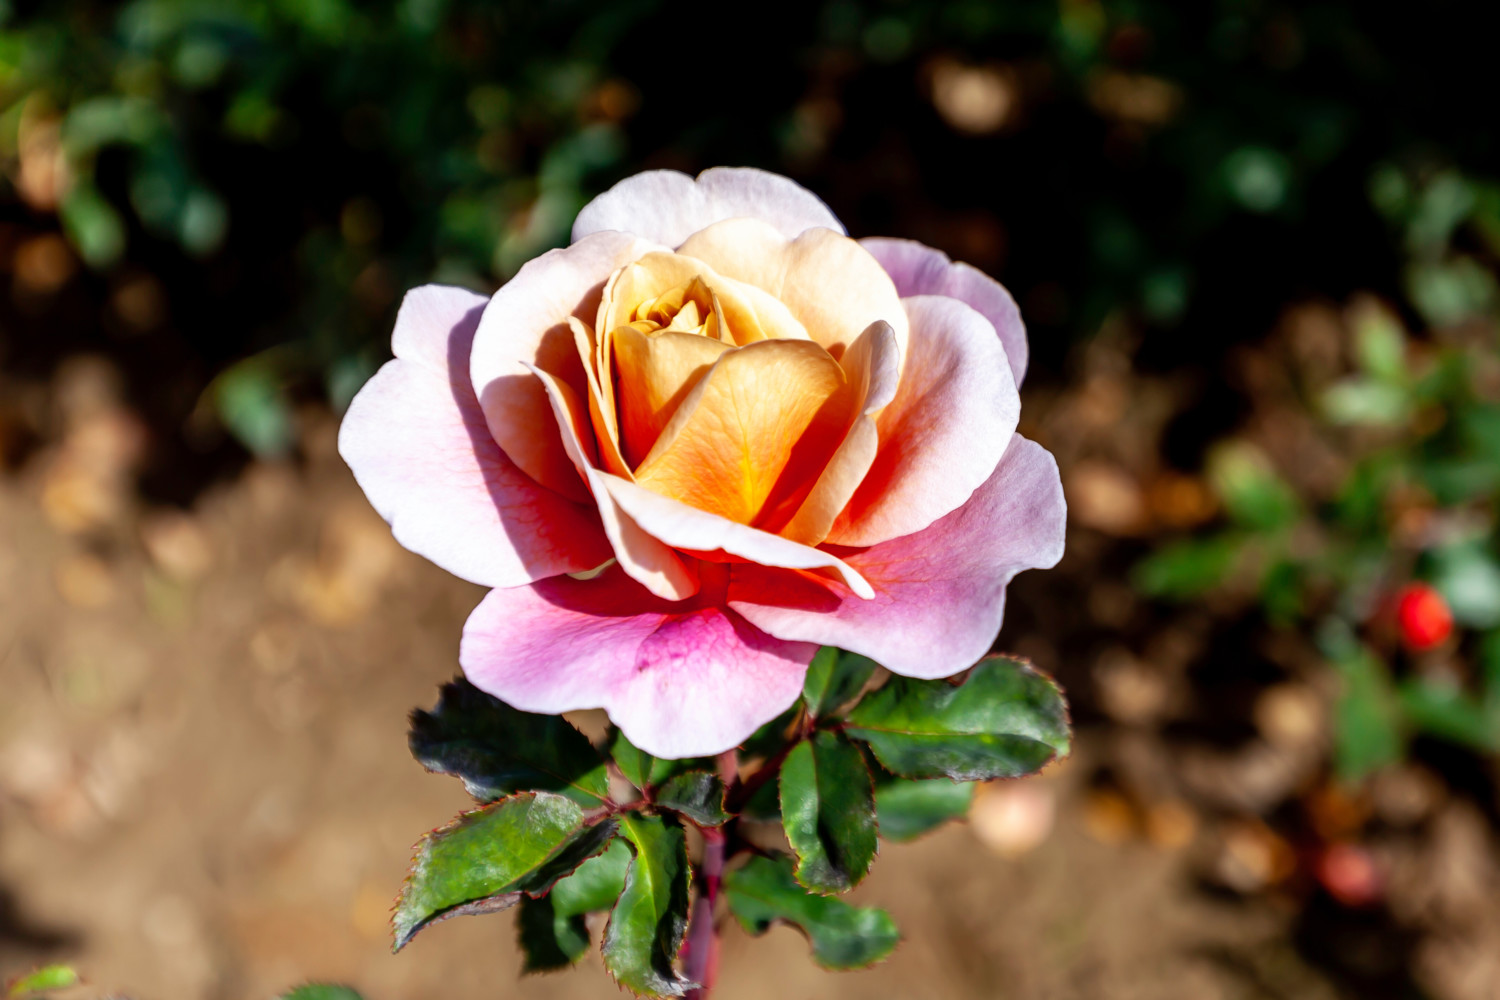 Distant Drums rose cultivar in bloom